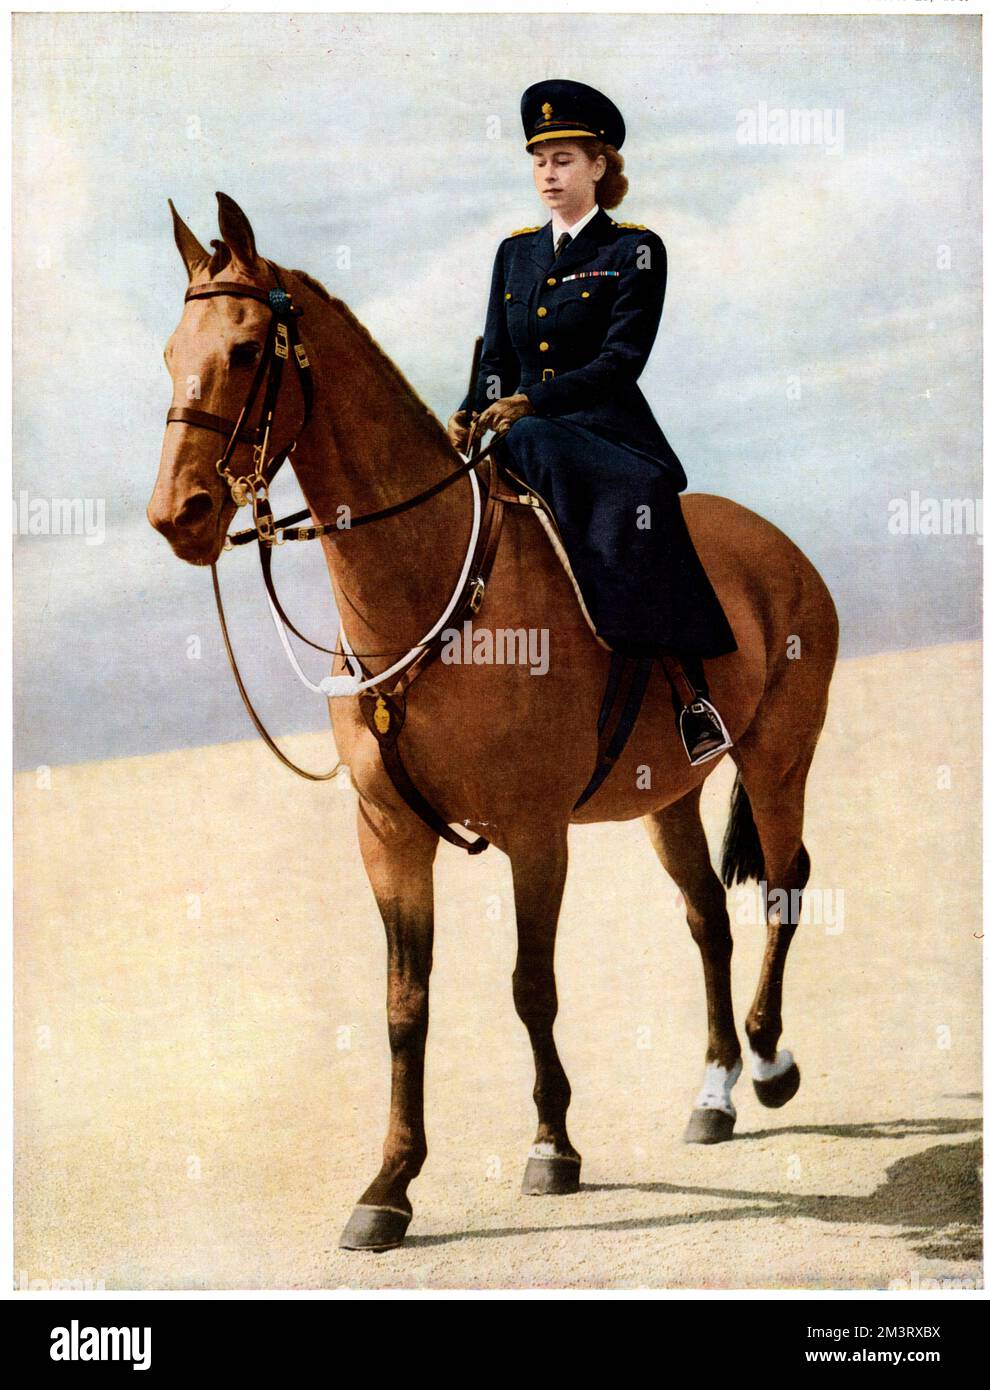 Königin Elizabeth II., dann Prinzessin Elizabeth, in einer speziell entworfenen Uniform als Oberst der Grenadiergarde auf dem Pferderücken bei der Zeremonie "Trooping of the Colour" im Juni 1947, das erste Mal seit sieben Jahren. Sie trug eine speziell entworfene Gewohnheit und eine dunkelblaue Jacke mit Messingknopf und eine Kappe mit dem Abzeichen ihres Regiments. Datum: 1947 Stockfoto